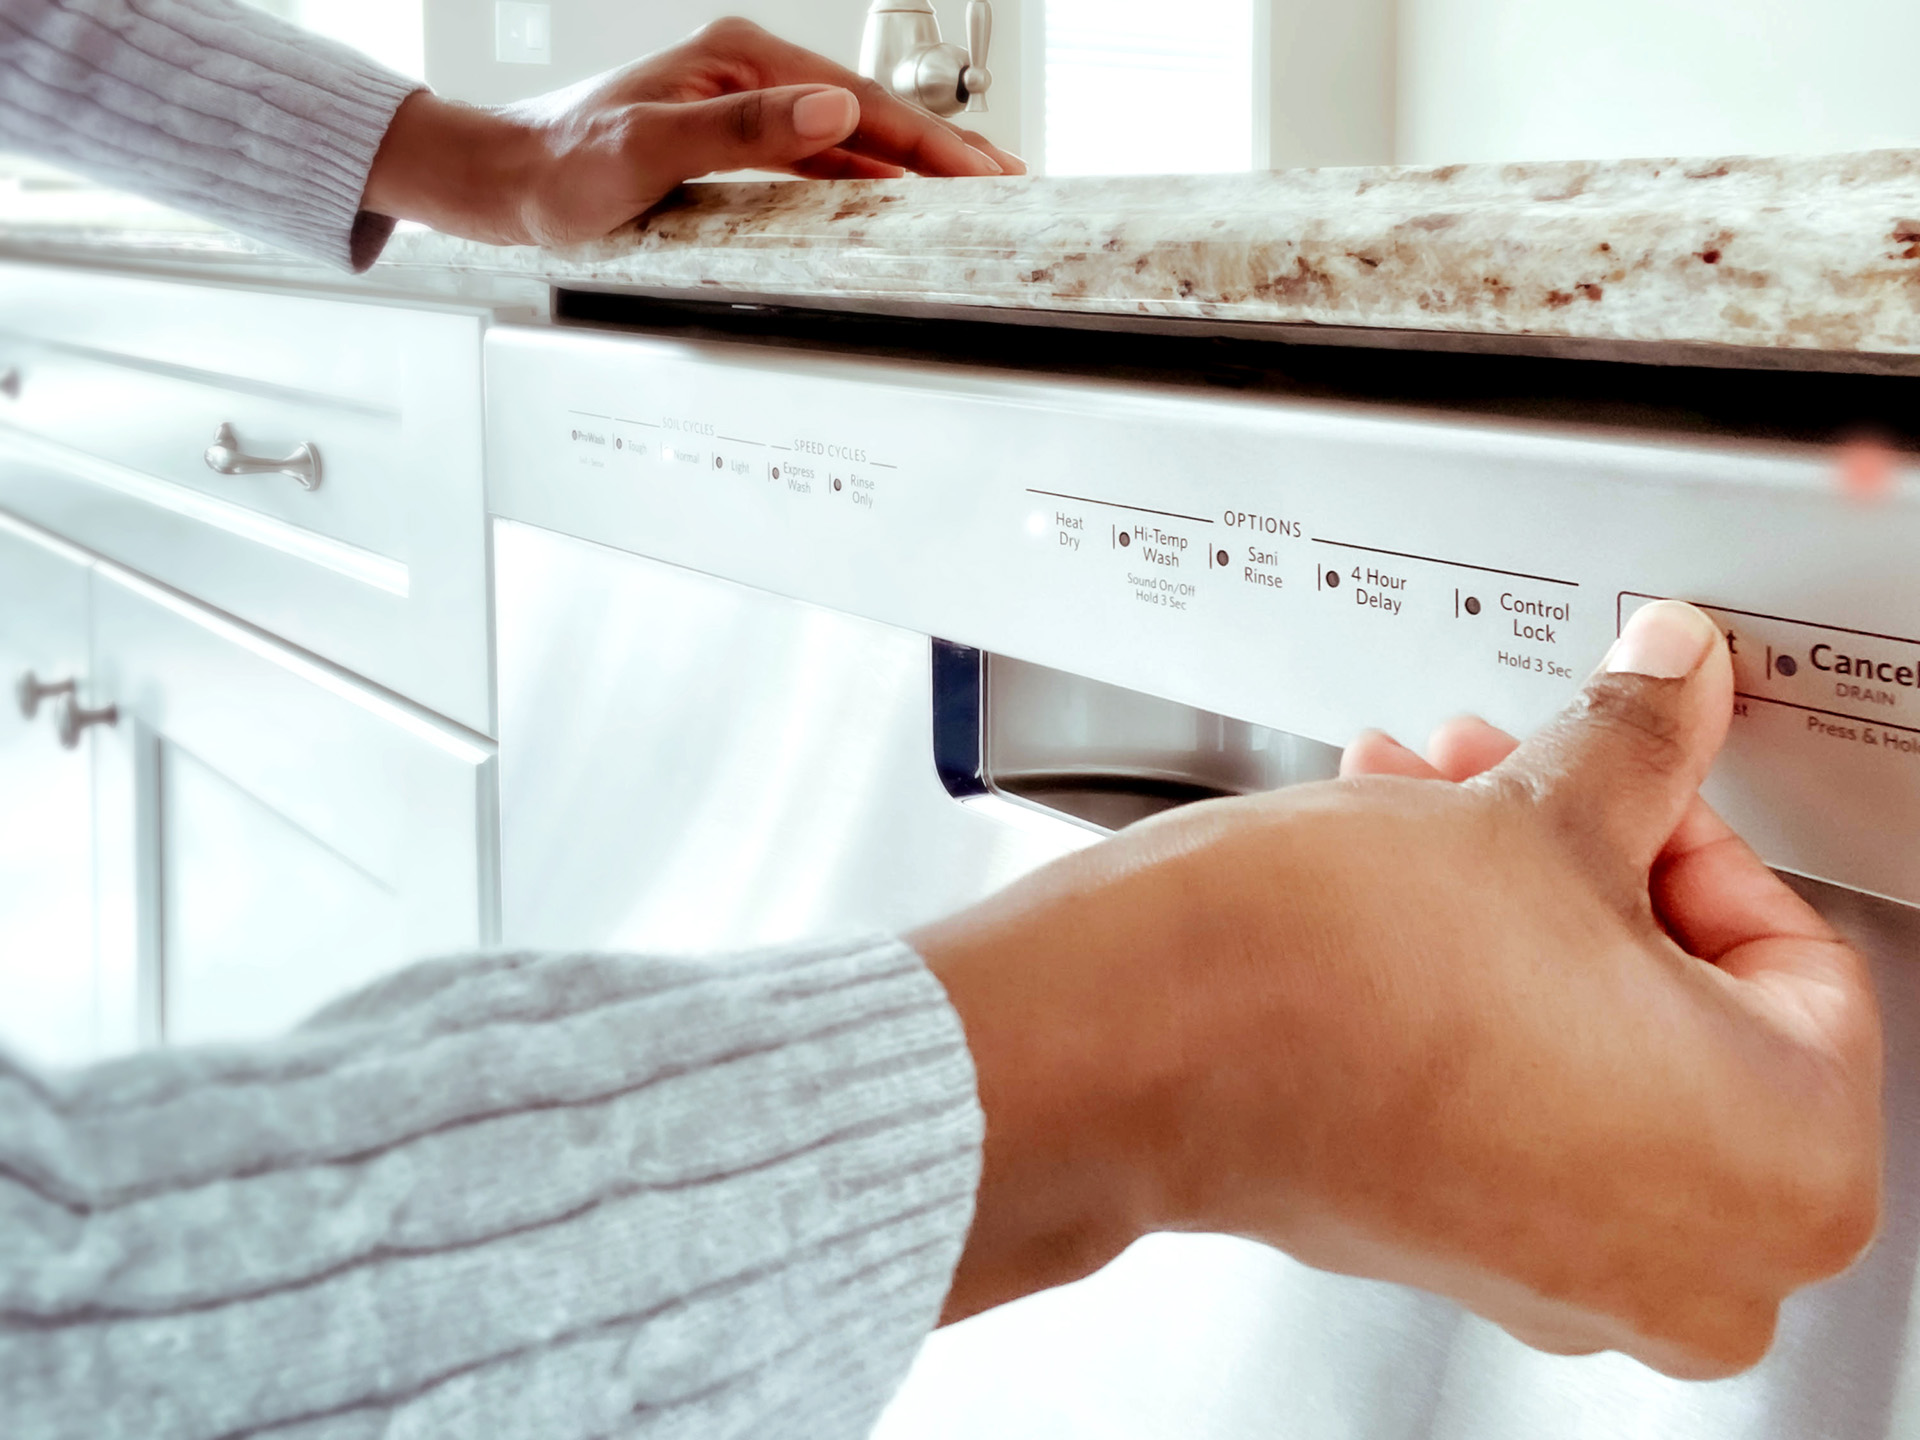 Entretien lave-vaisselle avec le programme Machine Care